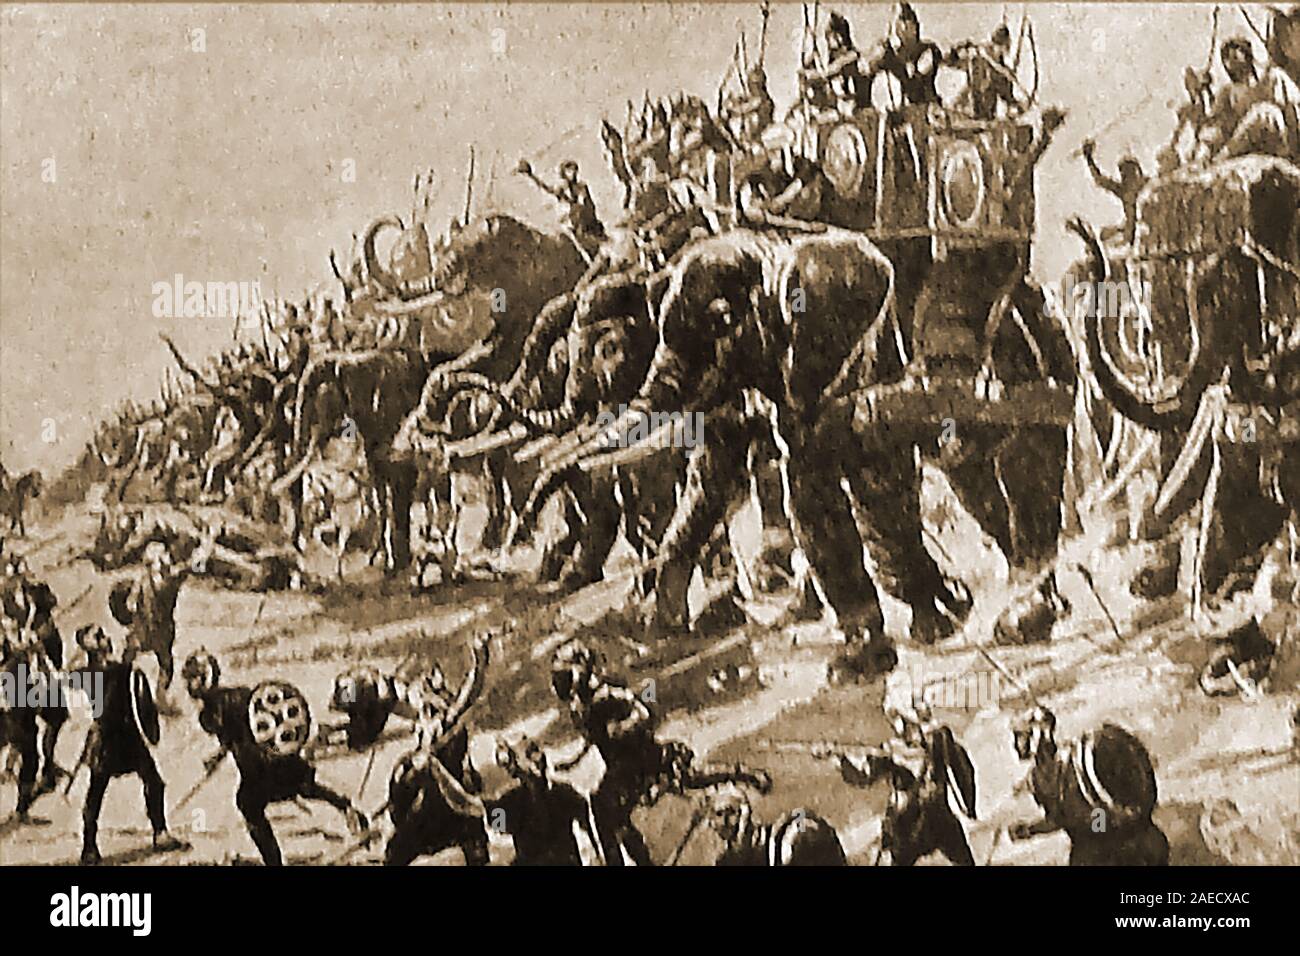 Bataille de Zama (Tunisie) aka bataille des éléphants (202 BC) , une bataille entre les forces de l'Roamn Scipion et Hanibal qui impliquait des mercenaires de nombreux pays dont l'Espagne, la Gaule (France), la Ligurie, et même les îles Baléares. Banque D'Images